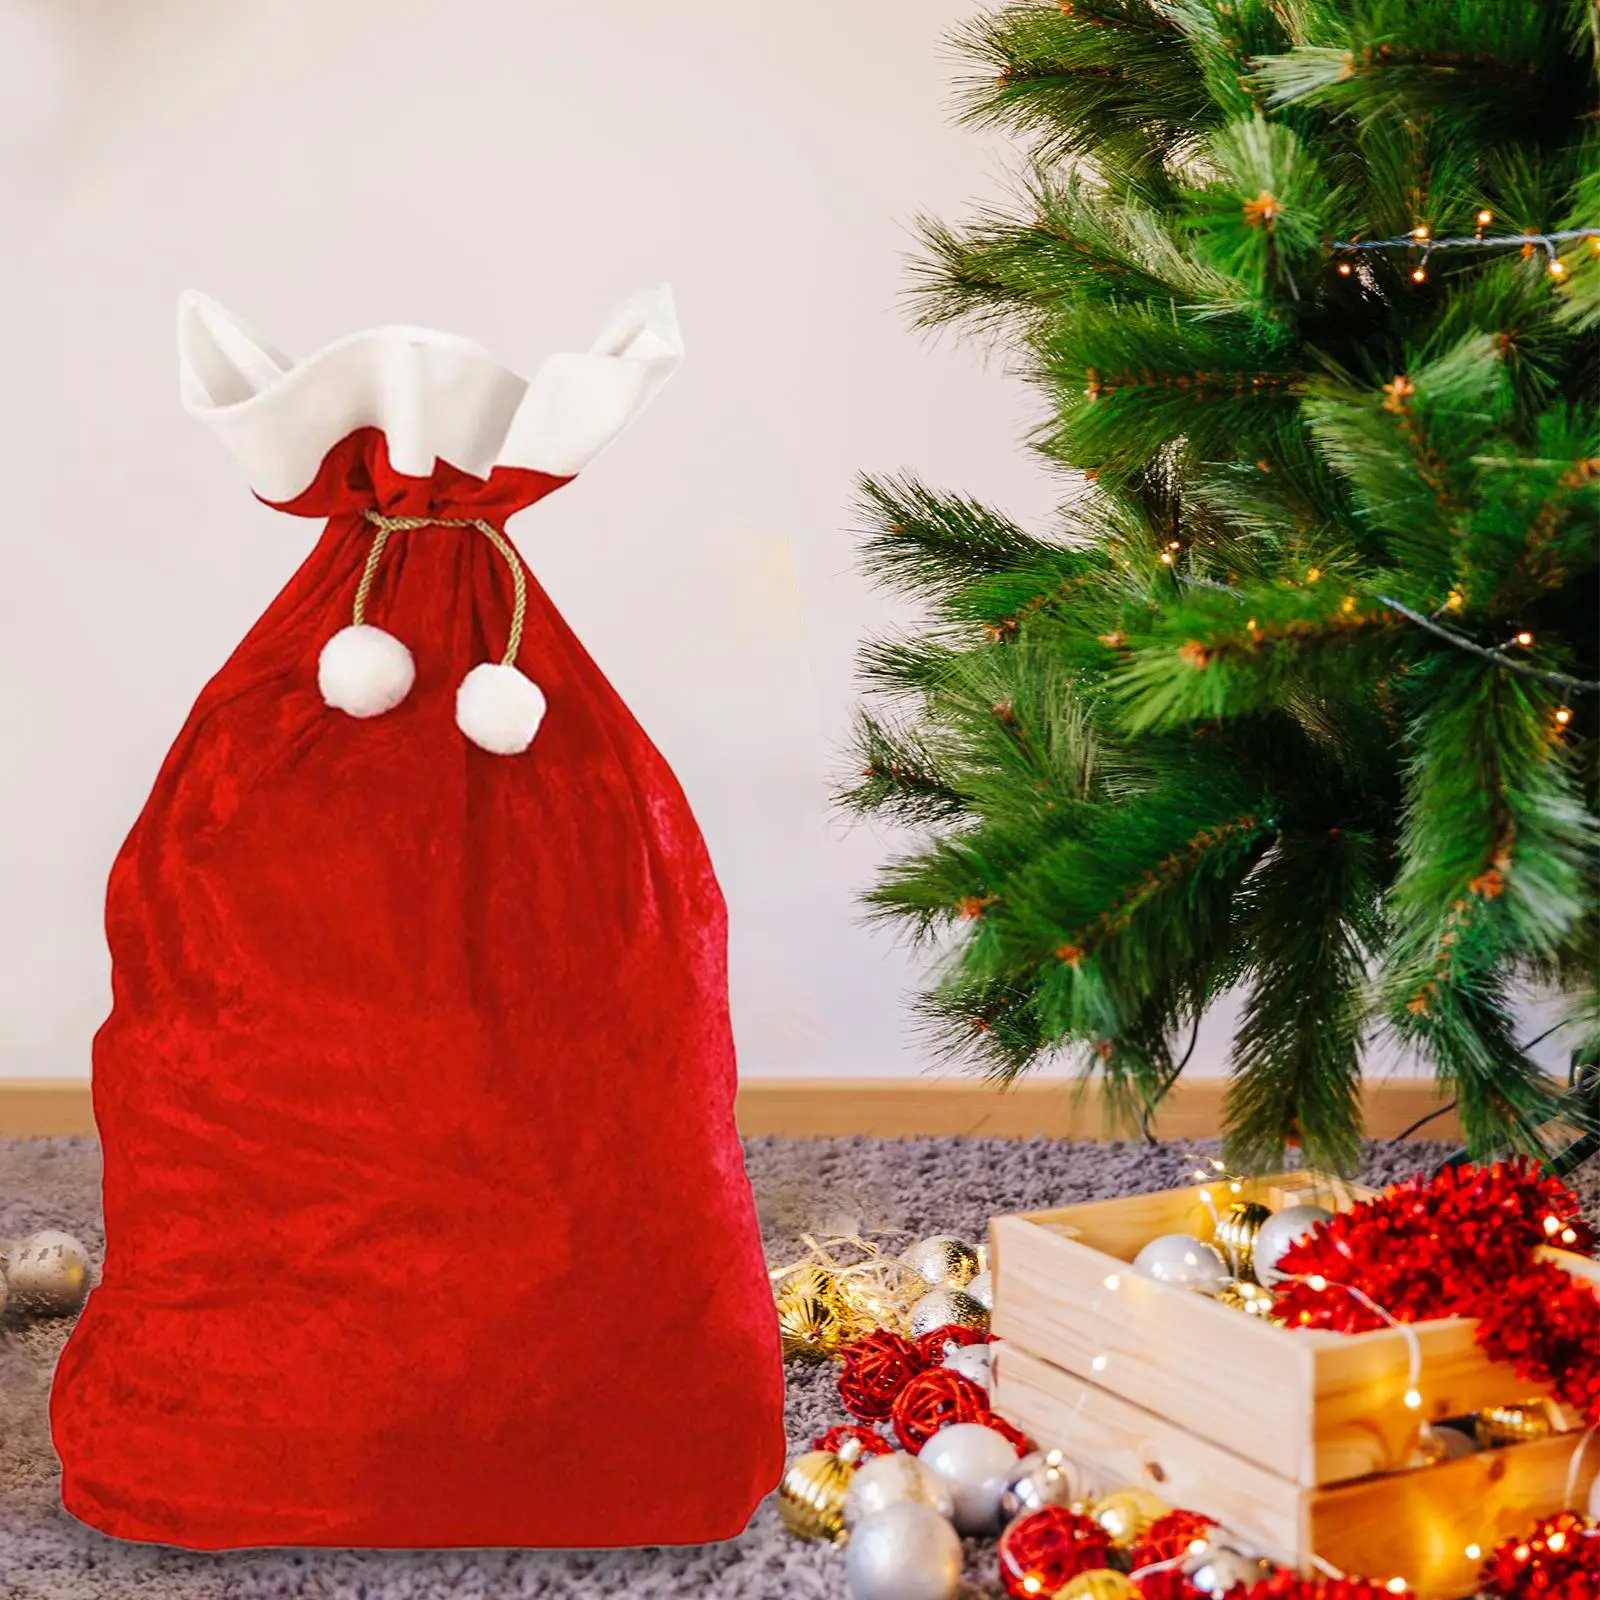 Large Christmas Gift Bag Drawstring Christmas Bag for Storing Christmas Presents and Decor Xmas Presents Christmas Party Favors